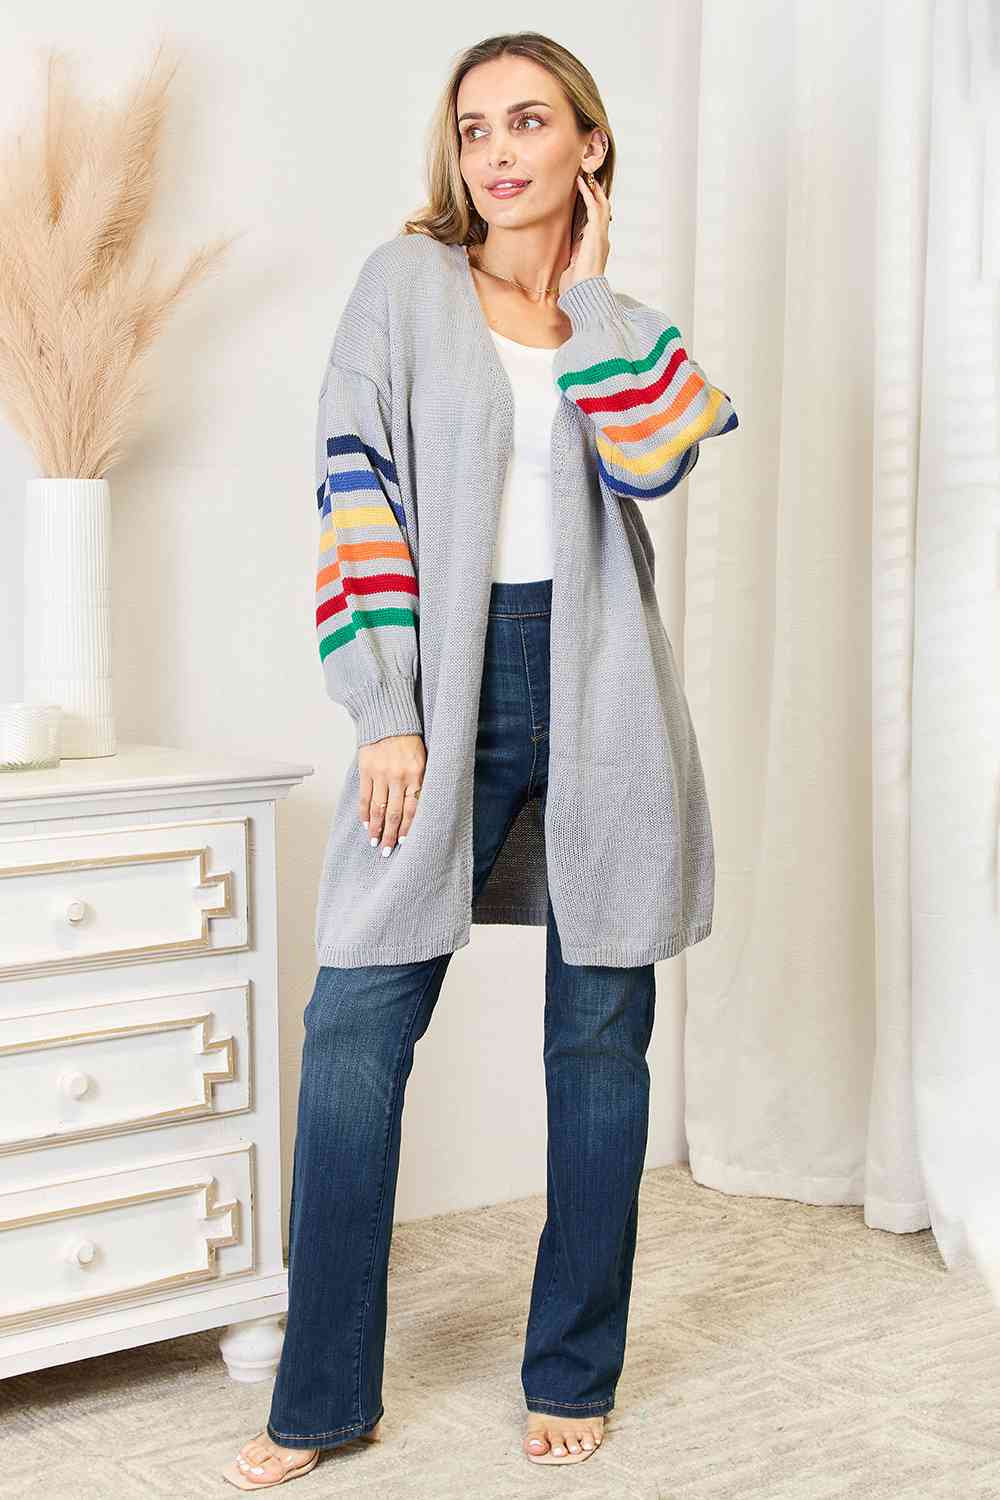 TEEK - Multicolored Stripe Open Front Cardigan SWEATER TEEK Trend   